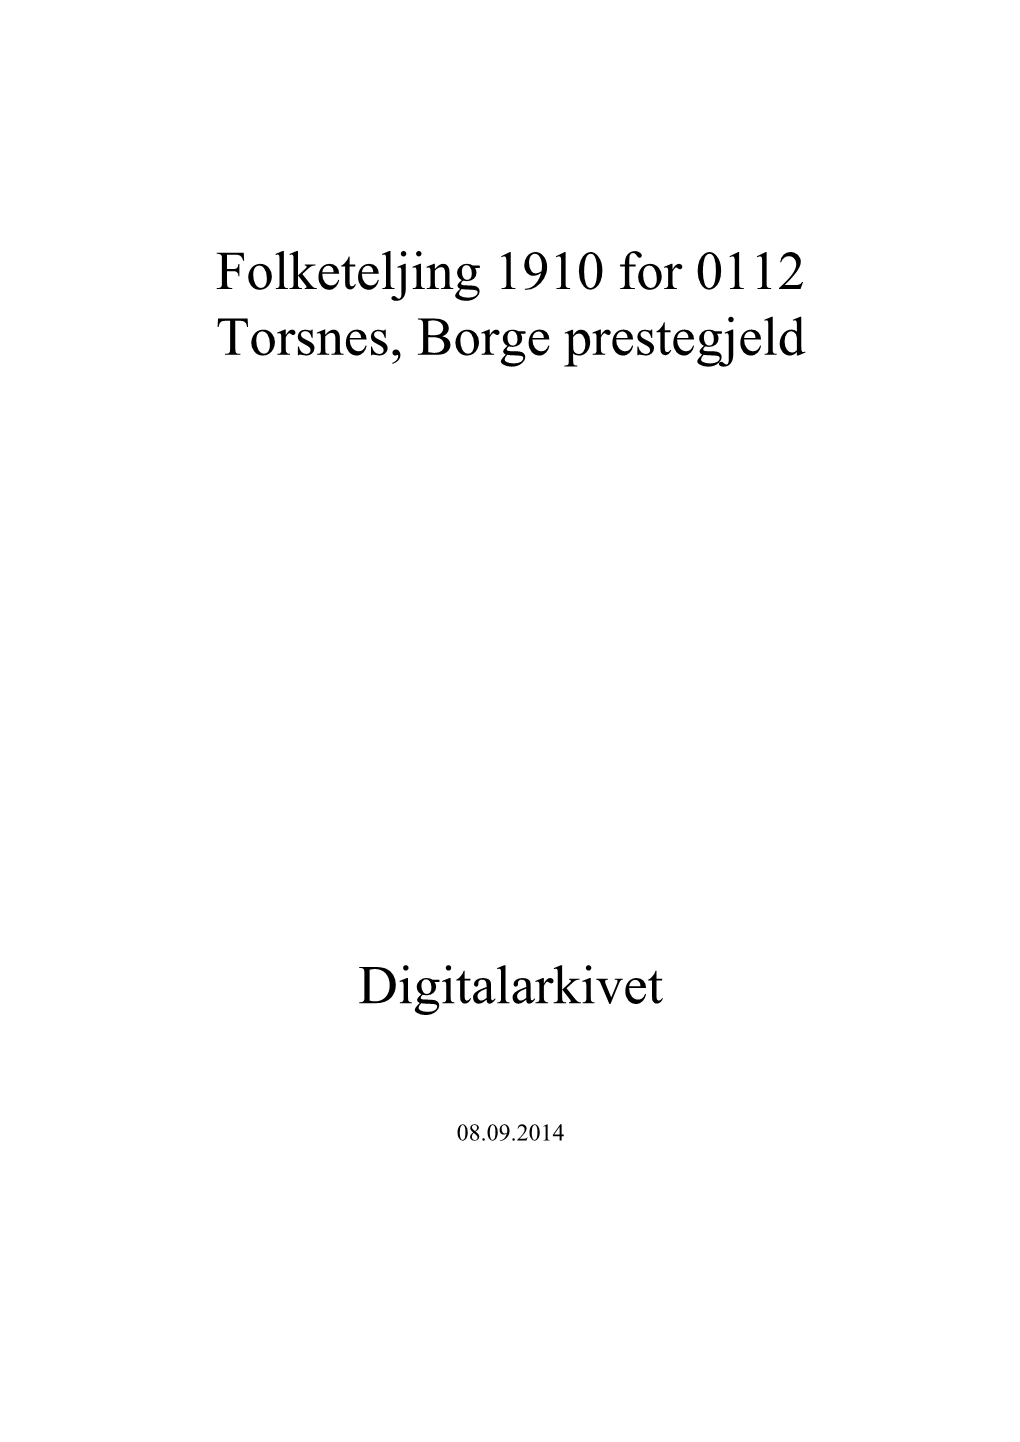 Folketeljing 1910 for 0112 Torsnes, Borge Prestegjeld Digitalarkivet